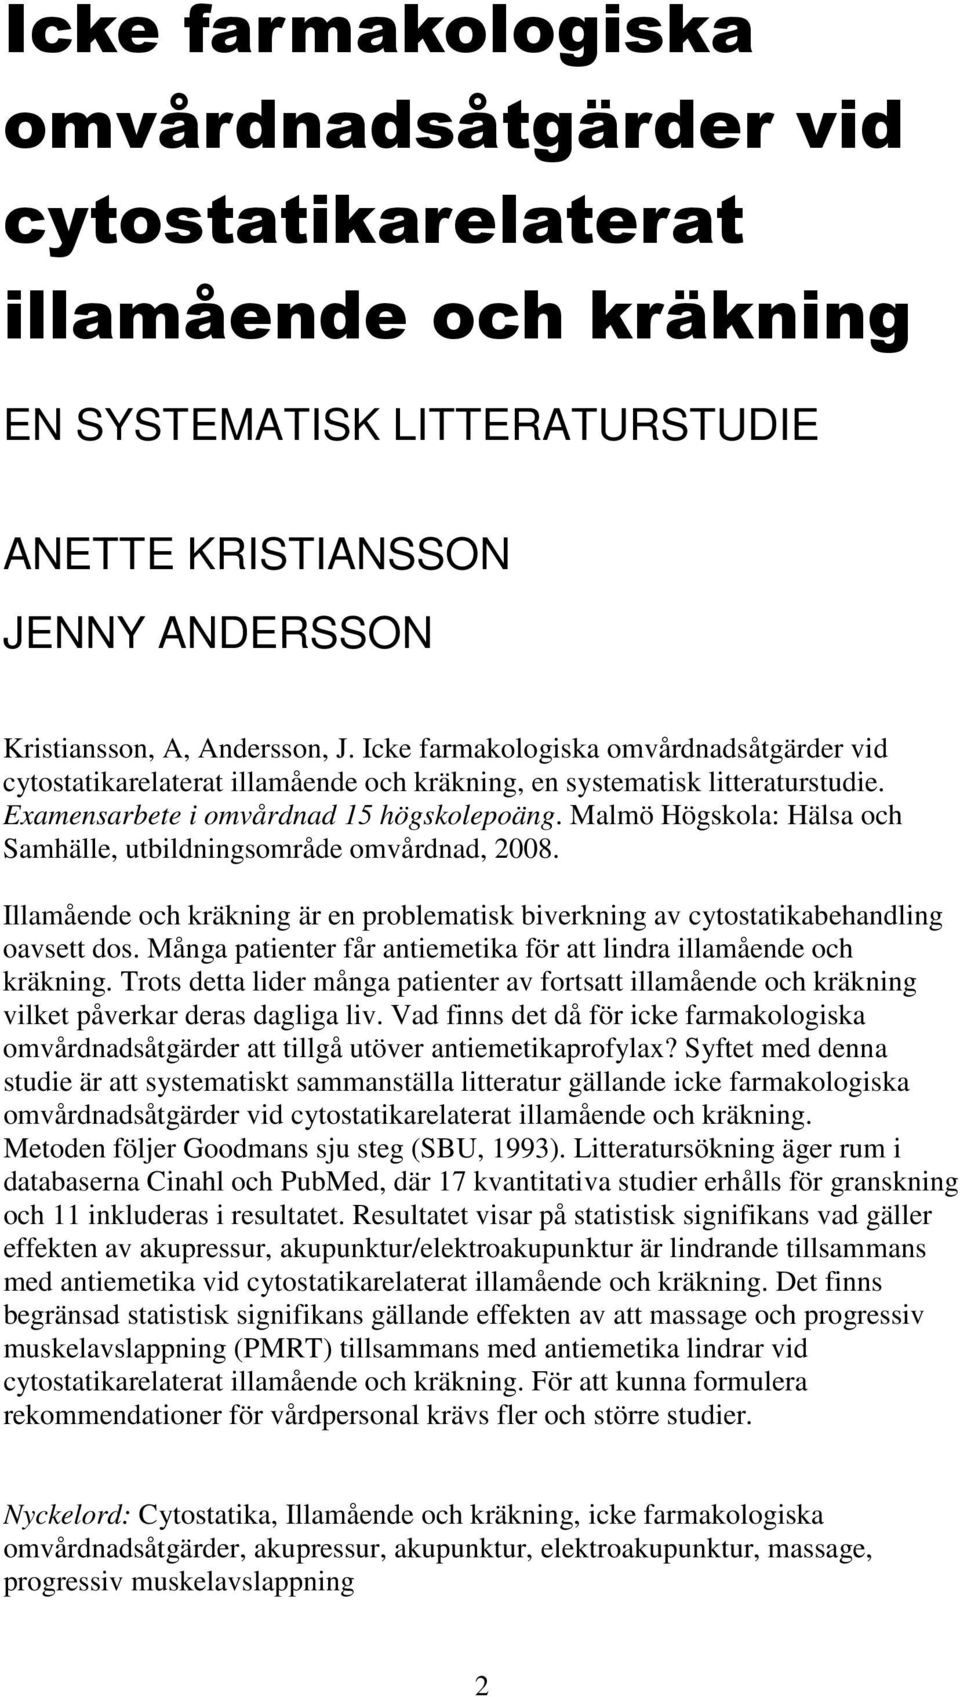 Malmö Högskola: Hälsa och Samhälle, utbildningsområde omvårdnad, 2008. Illamående och kräkning är en problematisk biverkning av cytostatikabehandling oavsett dos.